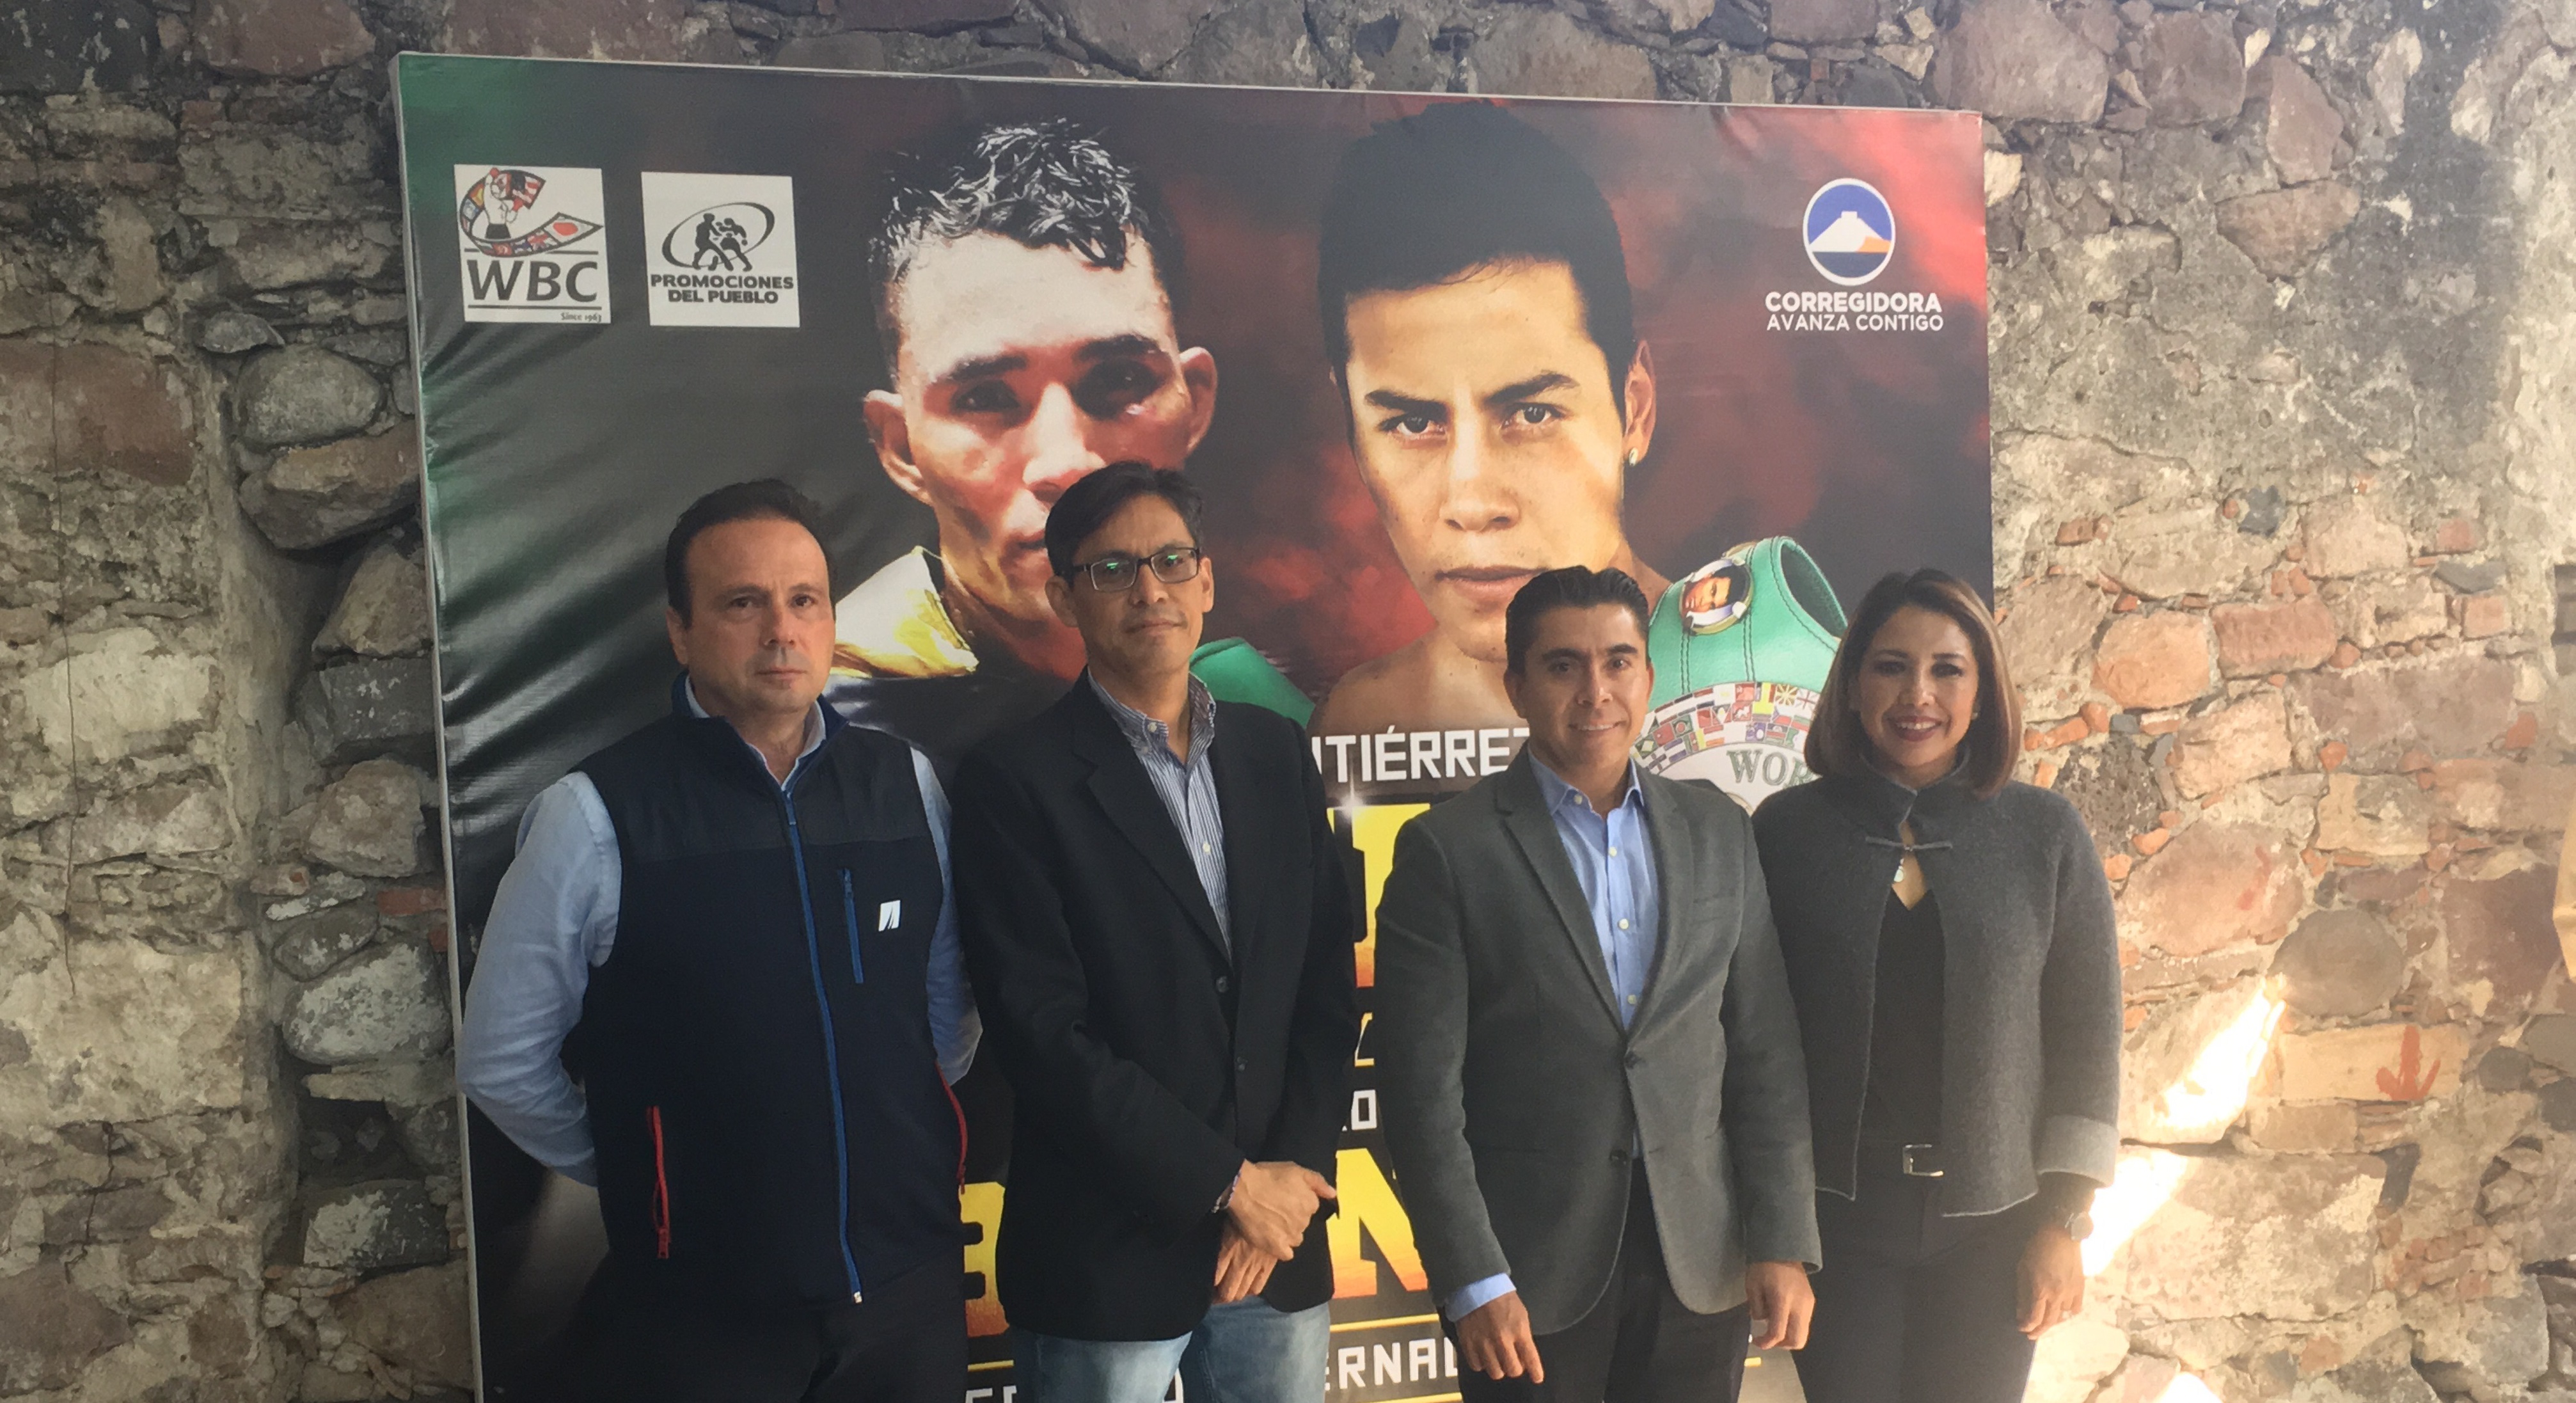  Albergará Corregidora función internacional de box entre “El Jaguar” y Ramiro Blanco